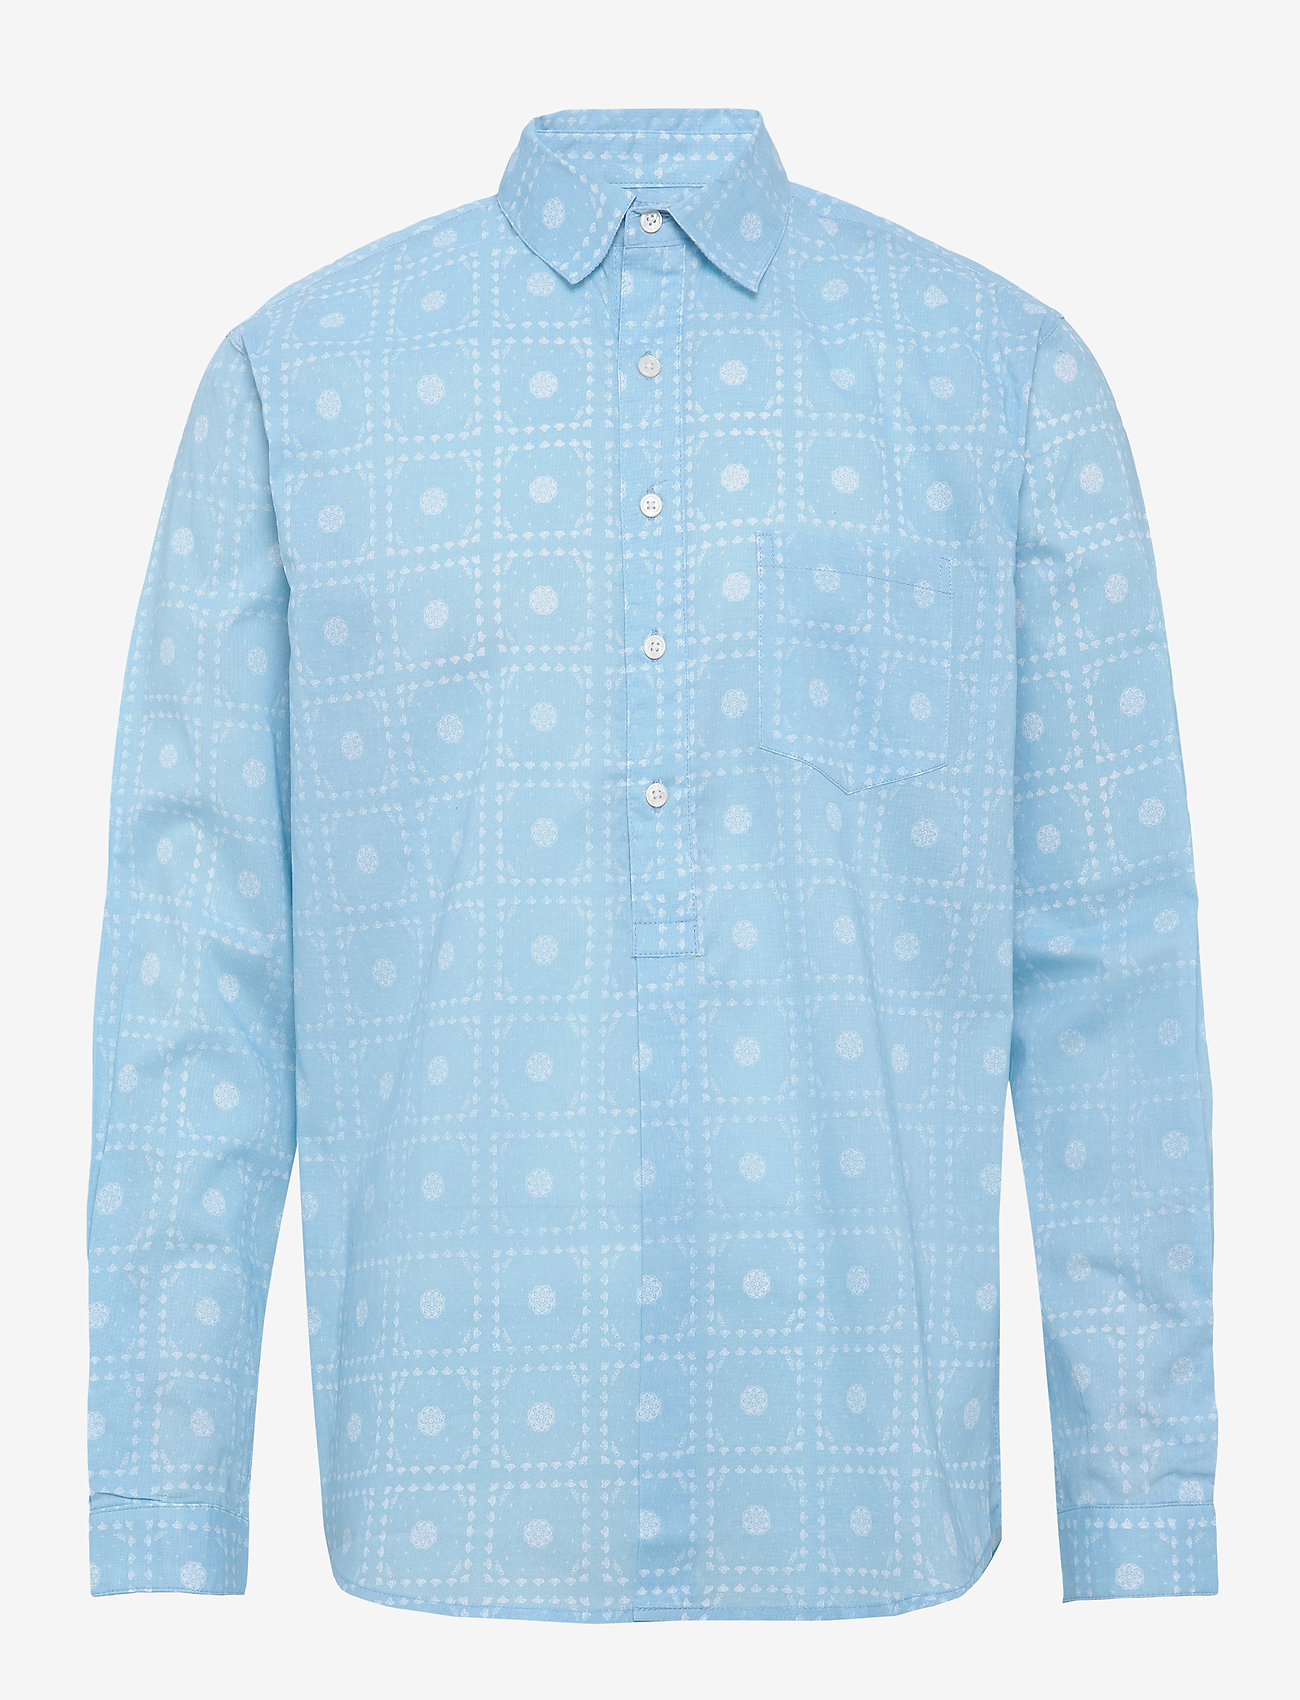 Resteröds - Pop over shirt, paisley - business shirts - blue - 0